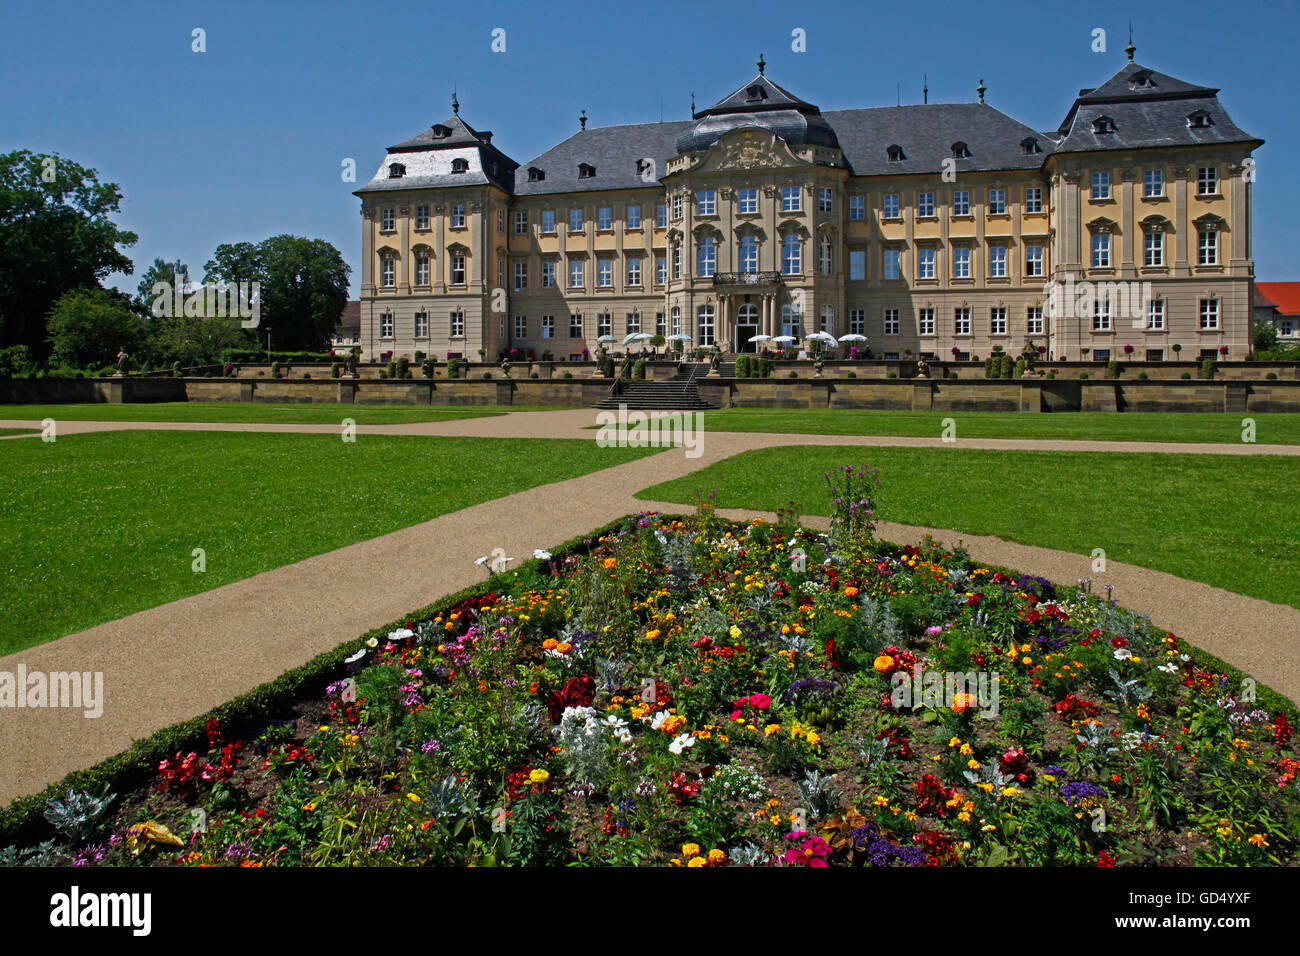 Schloss Werneck, Burgviertel Gelände, Werneck, Schweinfurt, untere Franken, Bayern, Deutschland Stockfoto